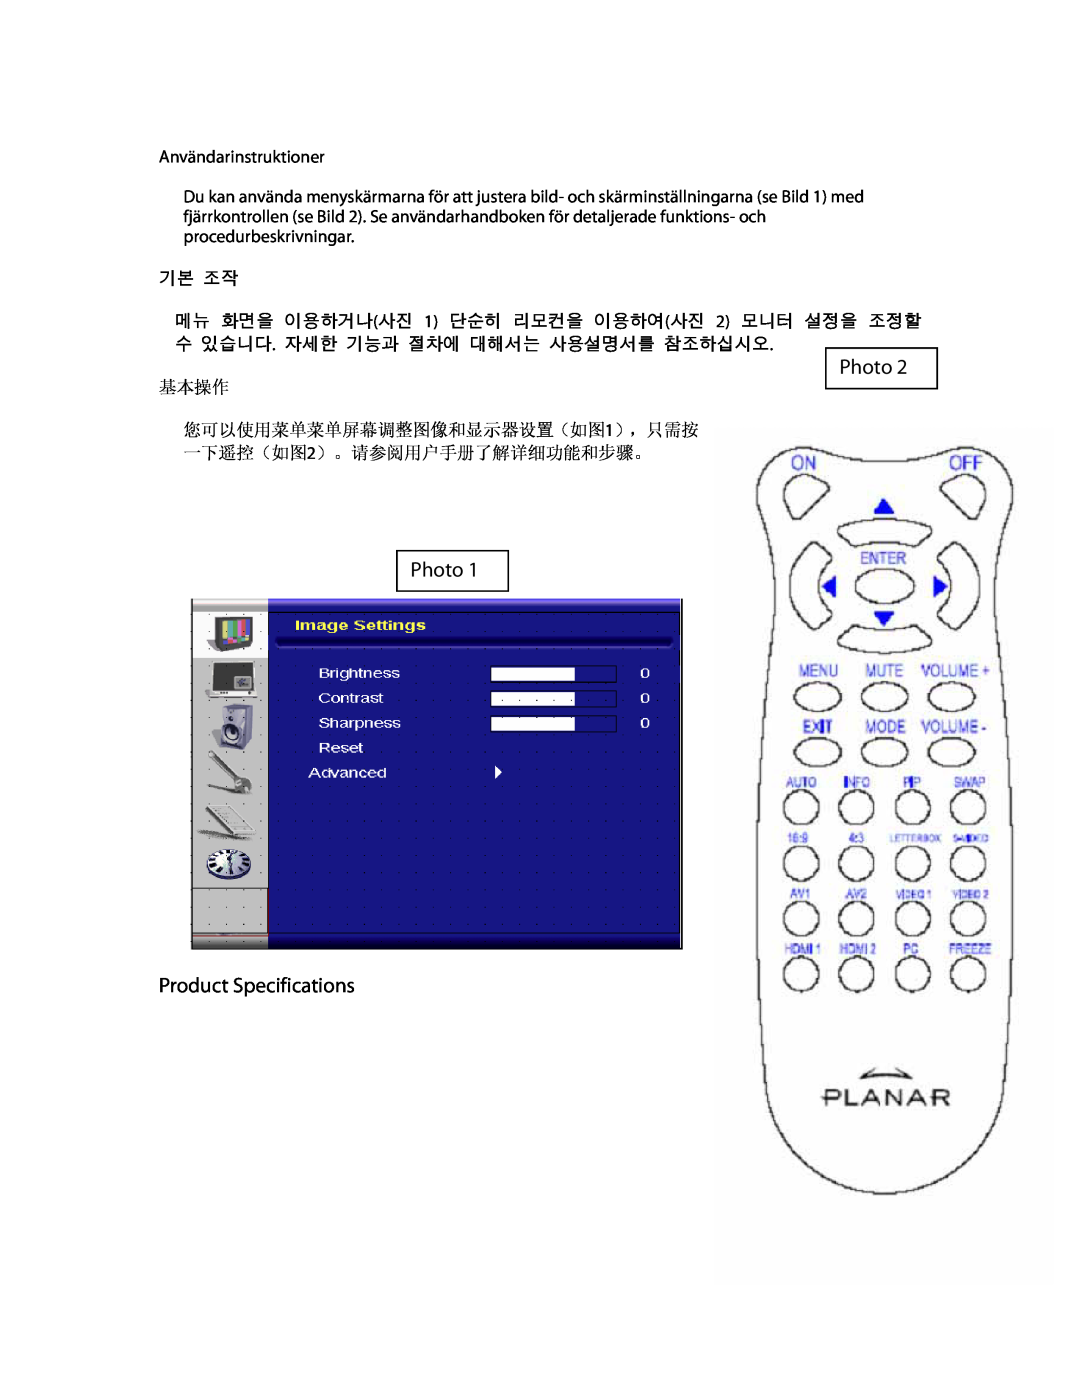 Planar PD370 manual Photo Product Specifications, Användarinstruktioner, 기본 조작, 基本操作 